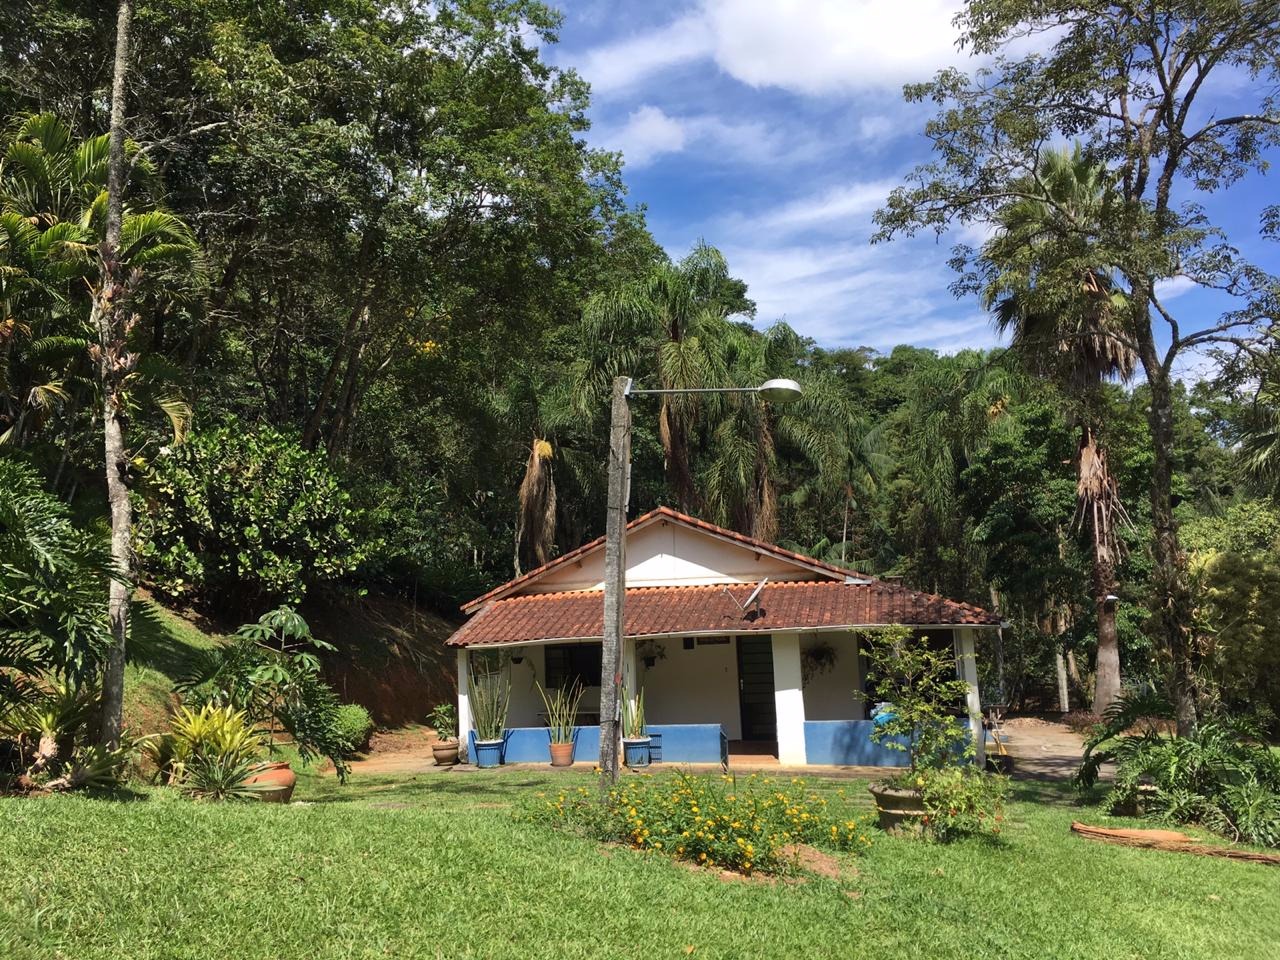 Chácara de 6.000 m² em São José dos Campos, SP